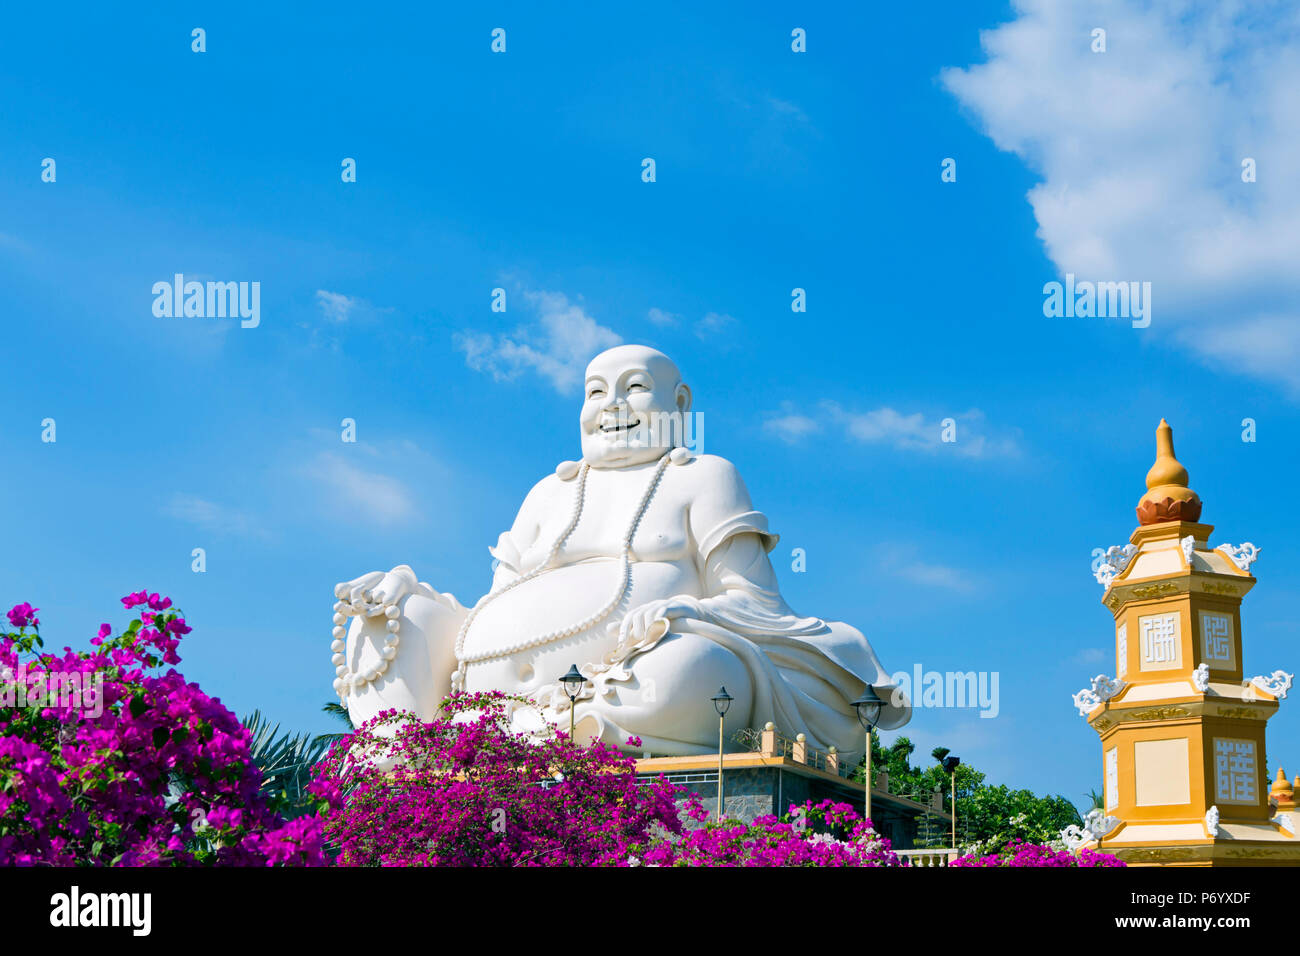 Asia, Sud Est Asiatico, Vietnam, il Delta del Mekong, My Tho, Vinh Trang, tempio buddista Foto Stock